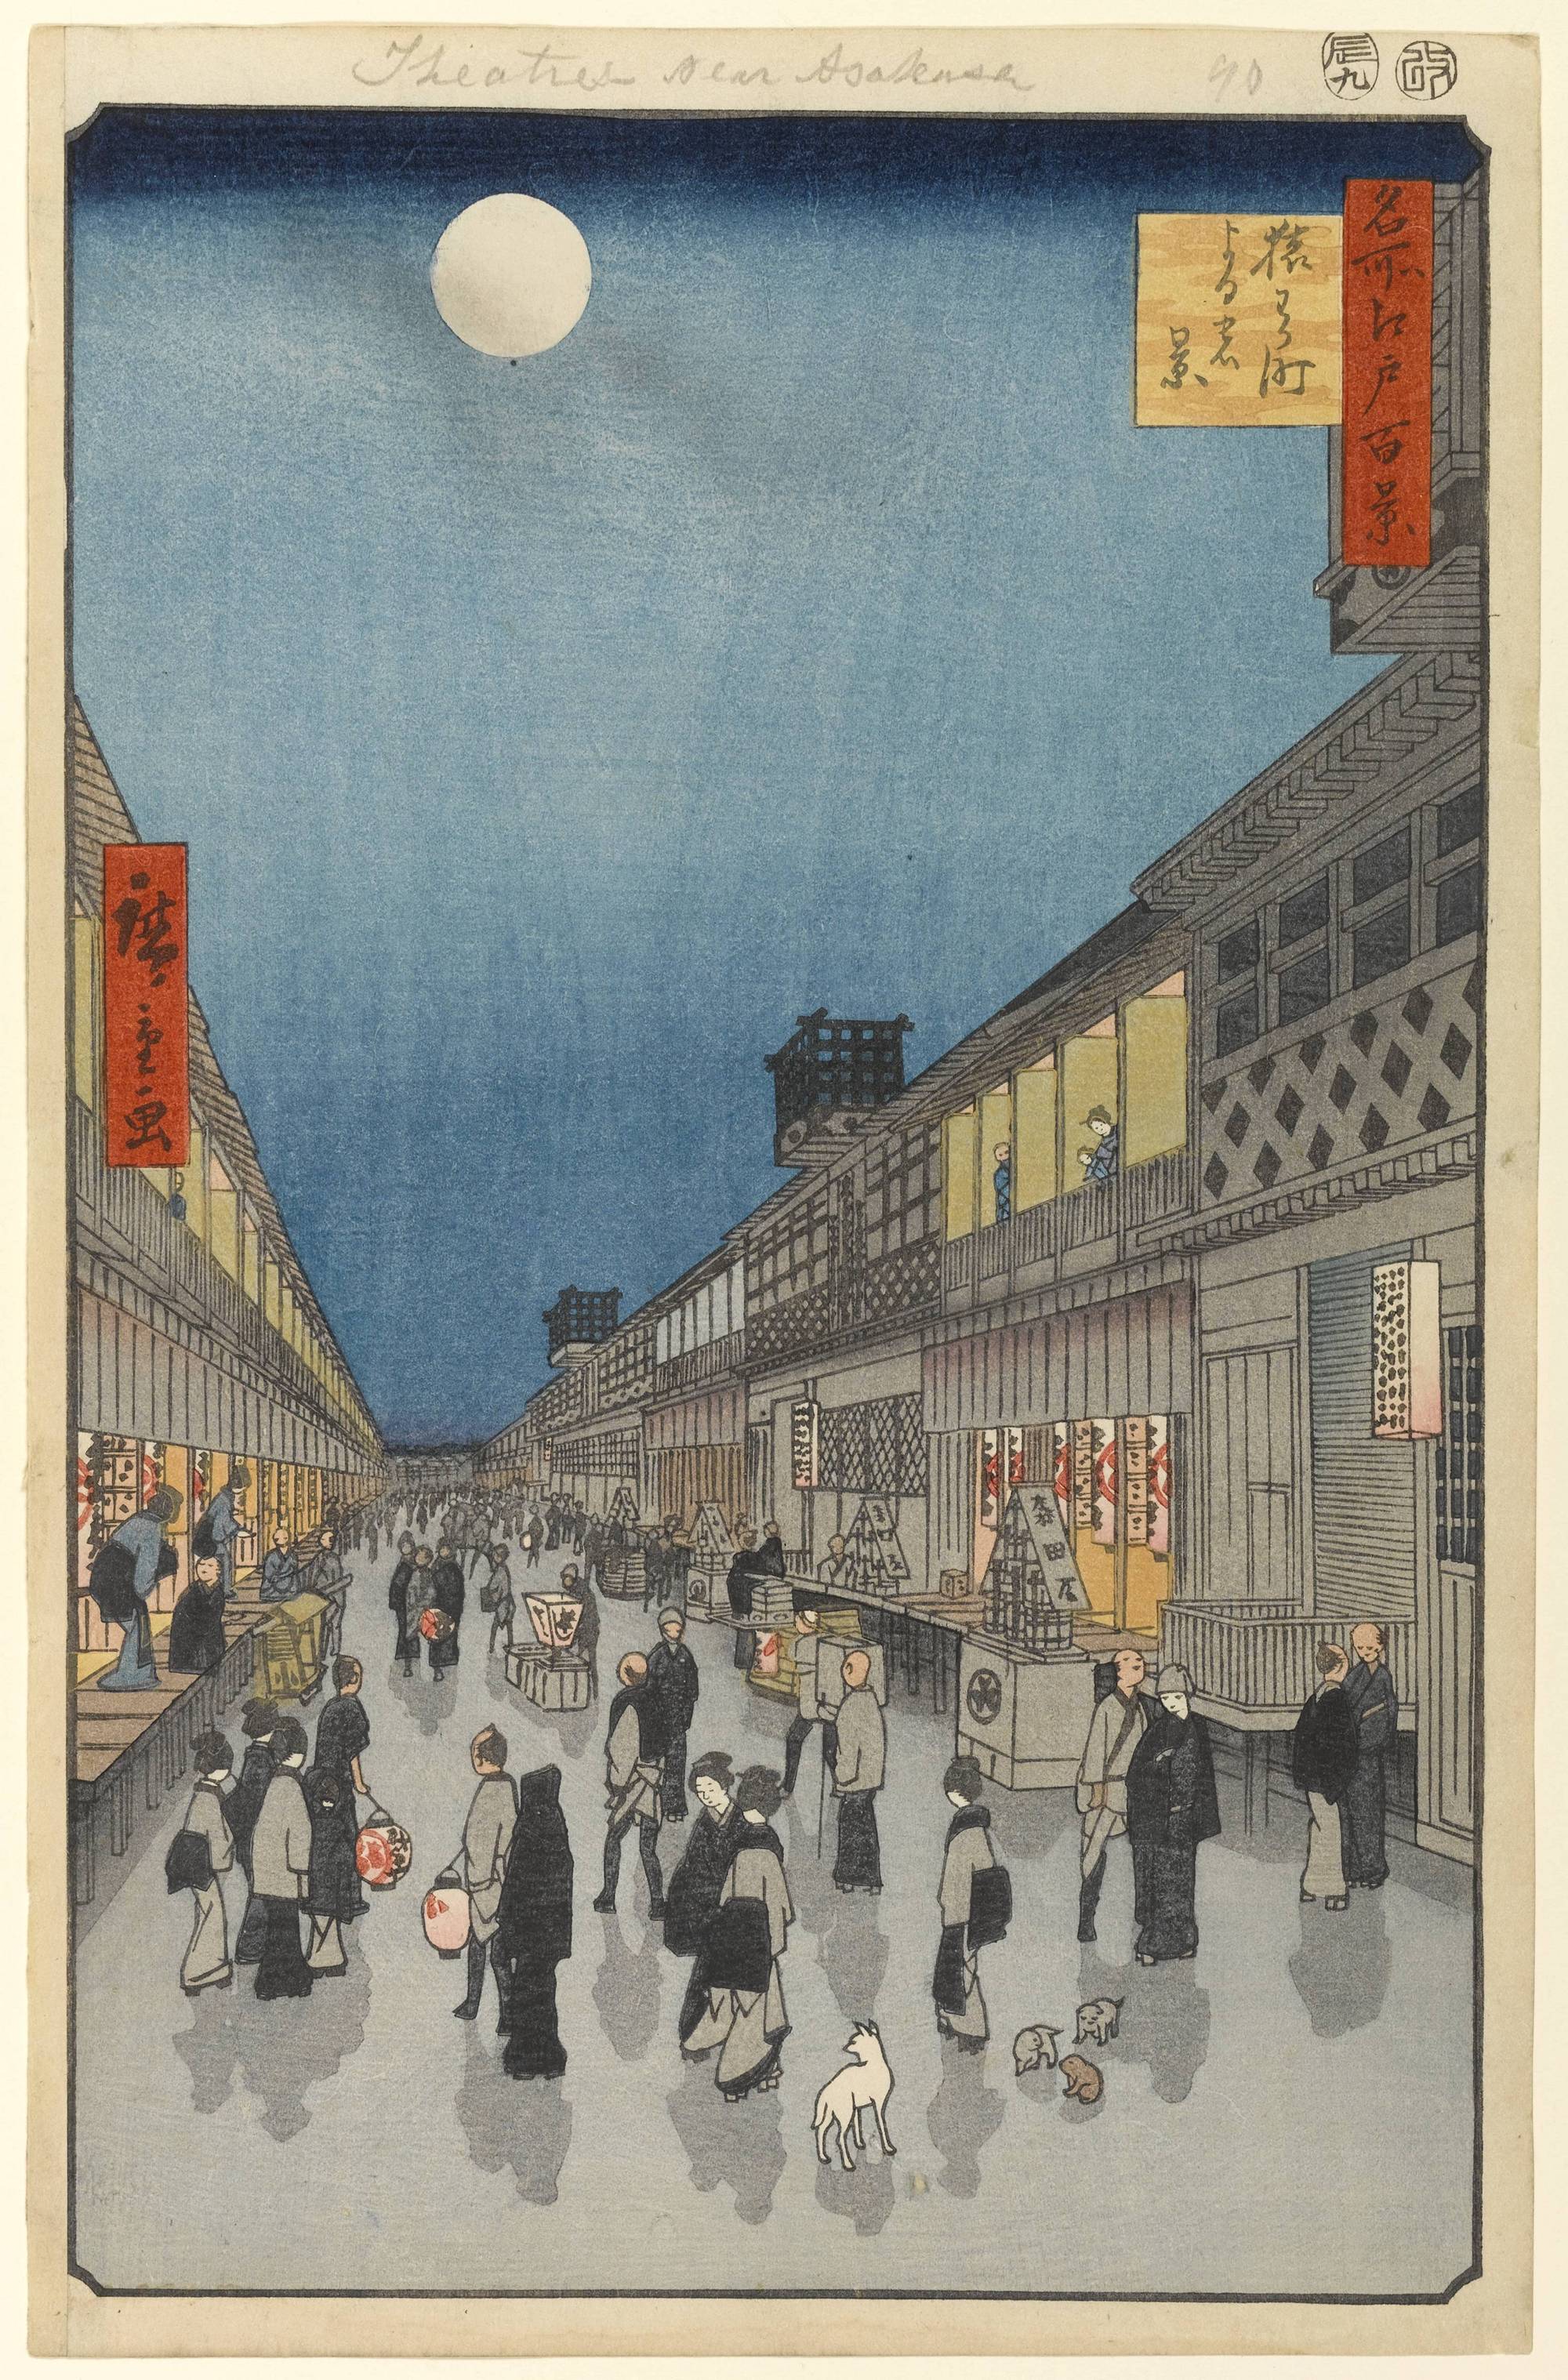 Гравюра из серии «Сто знаменитых видов Эдо» Хиросигэ, созданная им в период 1856—1858 гг.